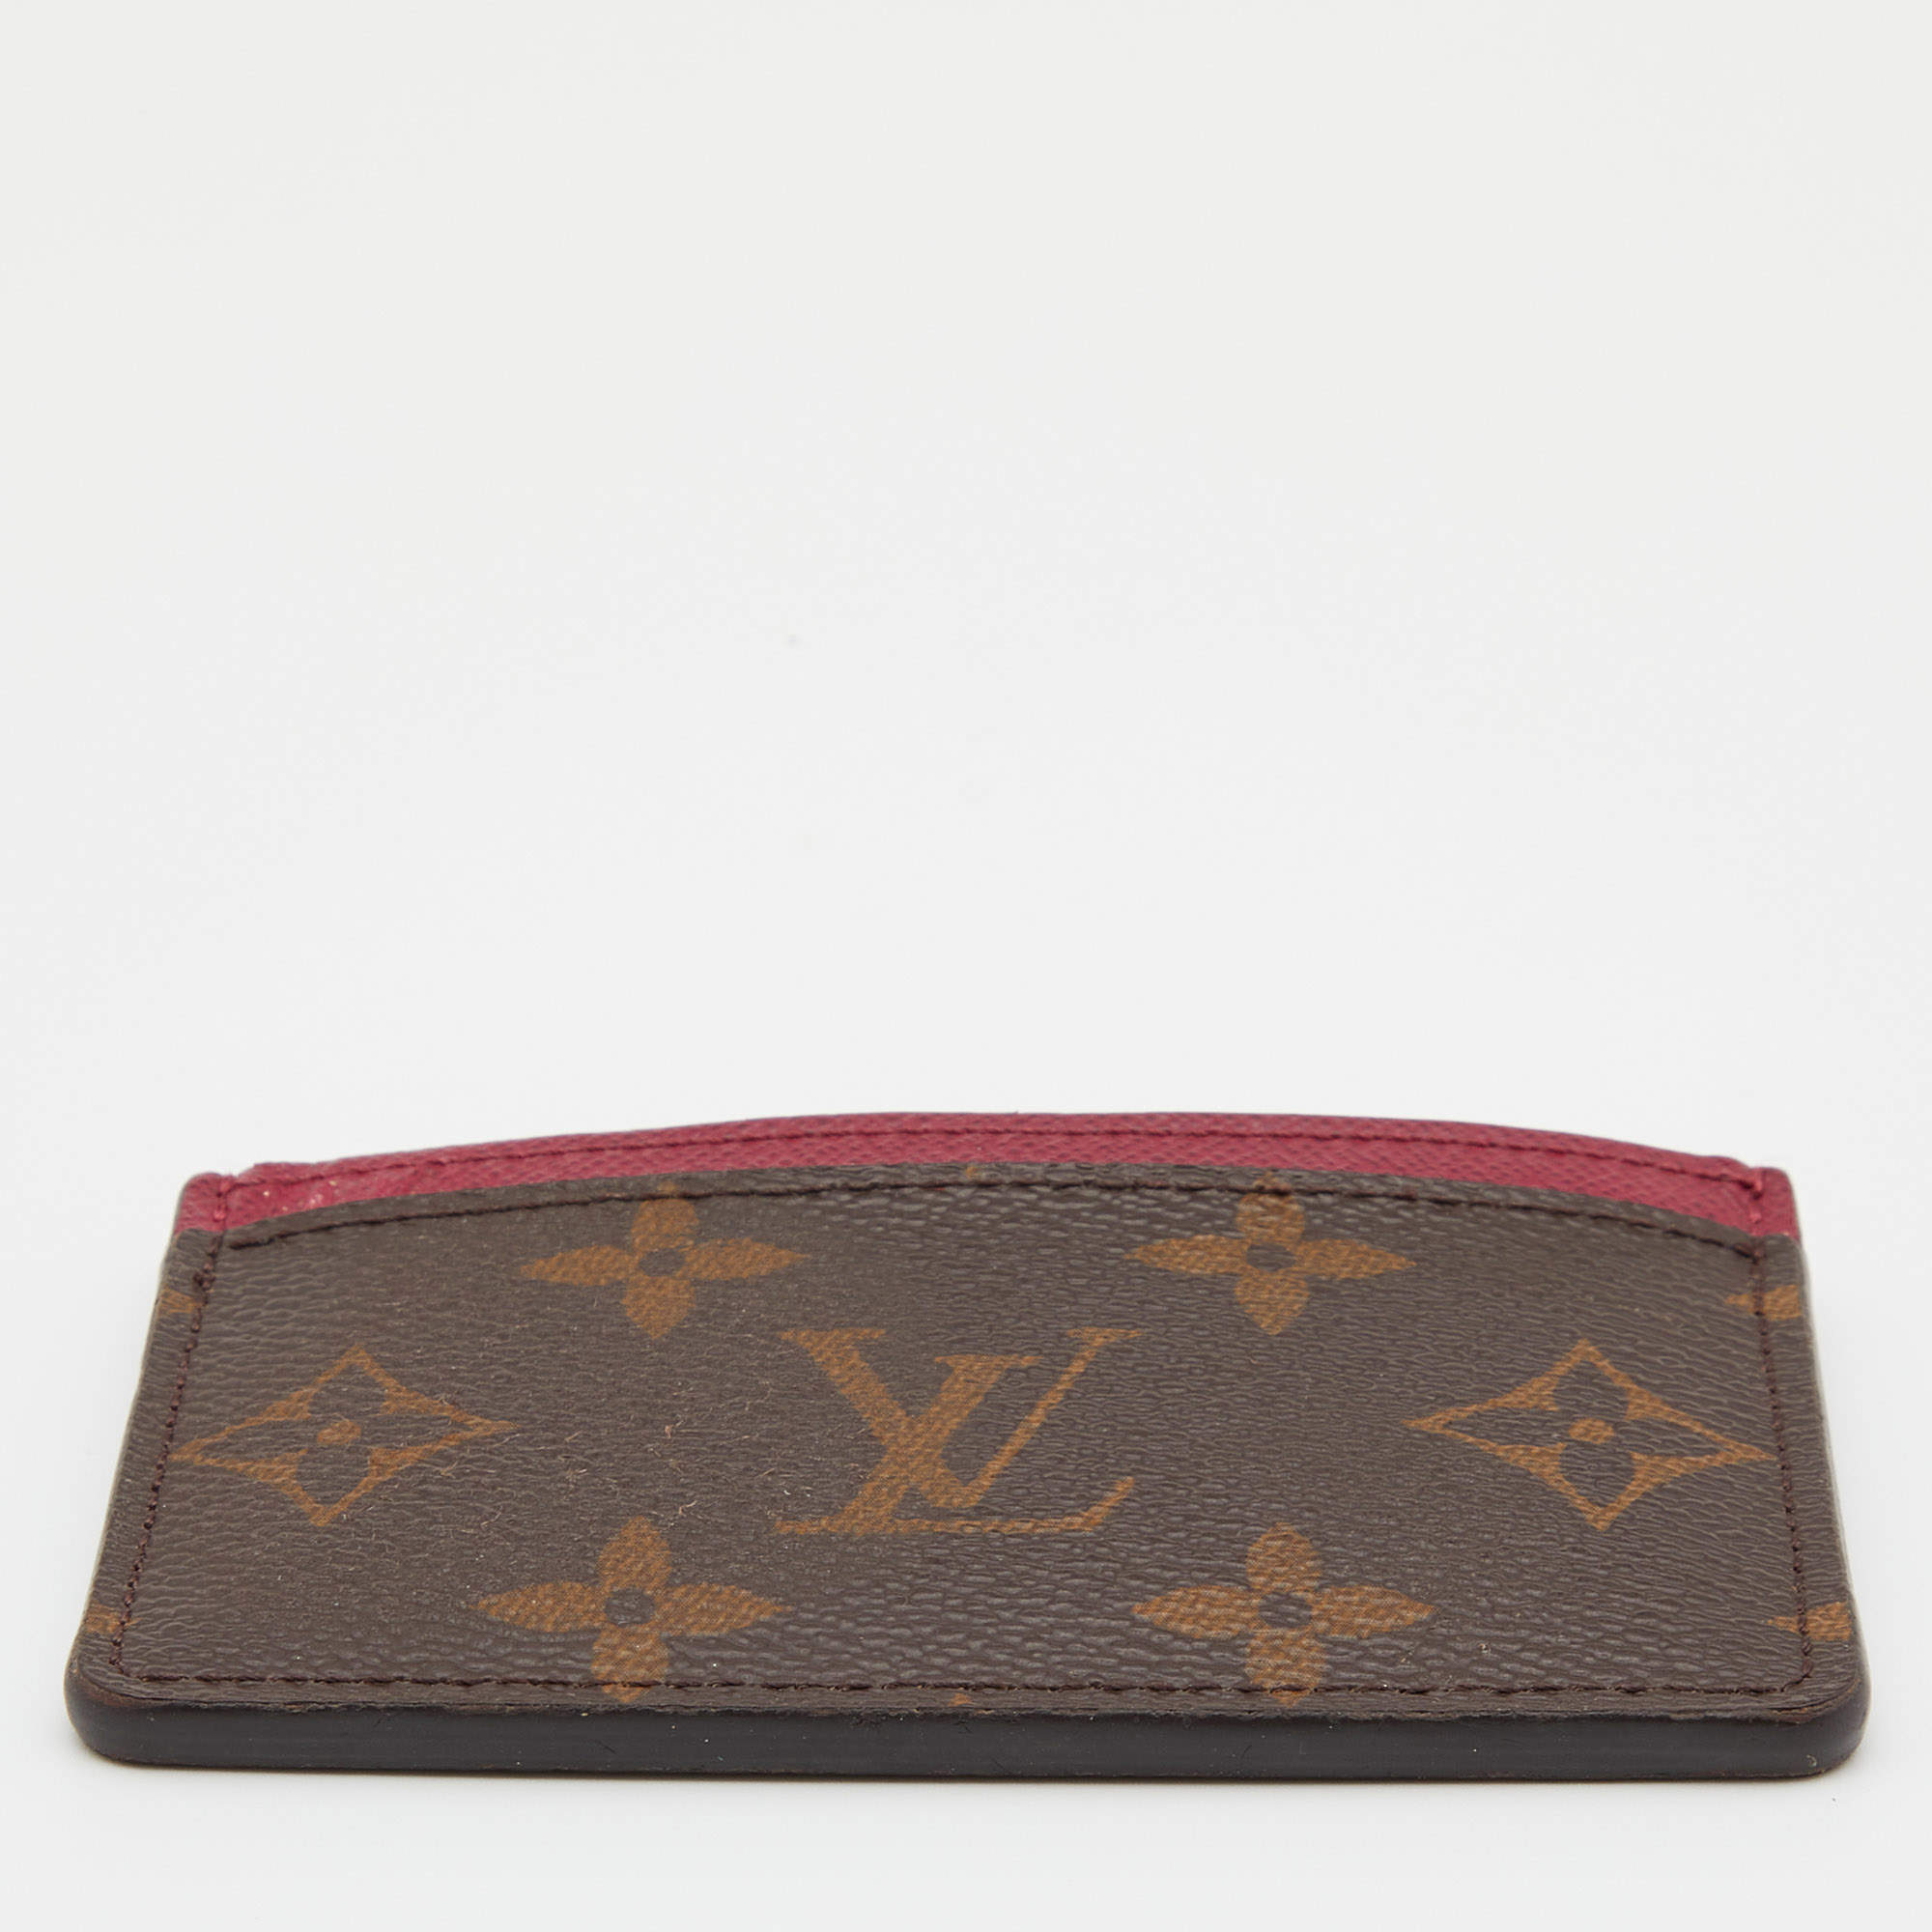 Louis Vuitton - Card Holder - Brown - Women - Luxury